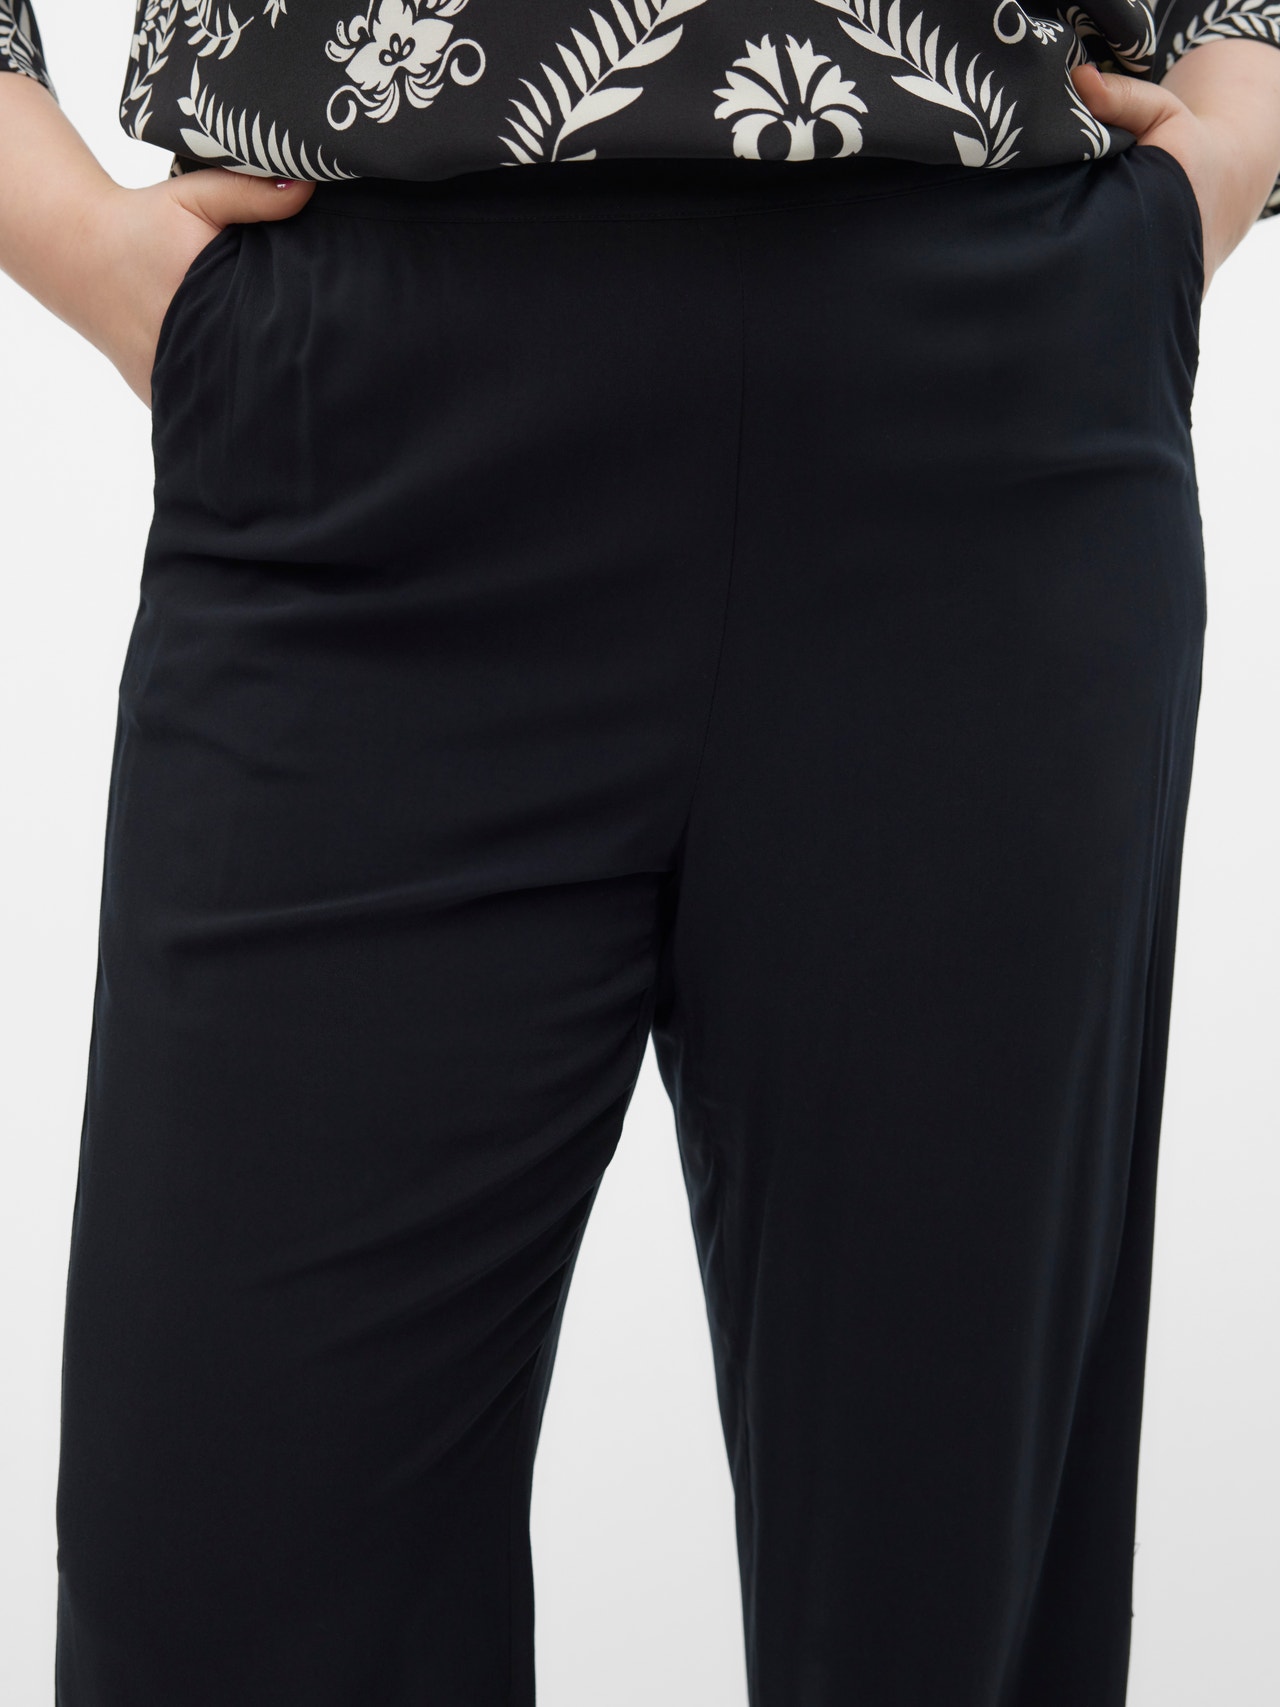 Vero Moda VMCEASY Trousers -Black - 10300130